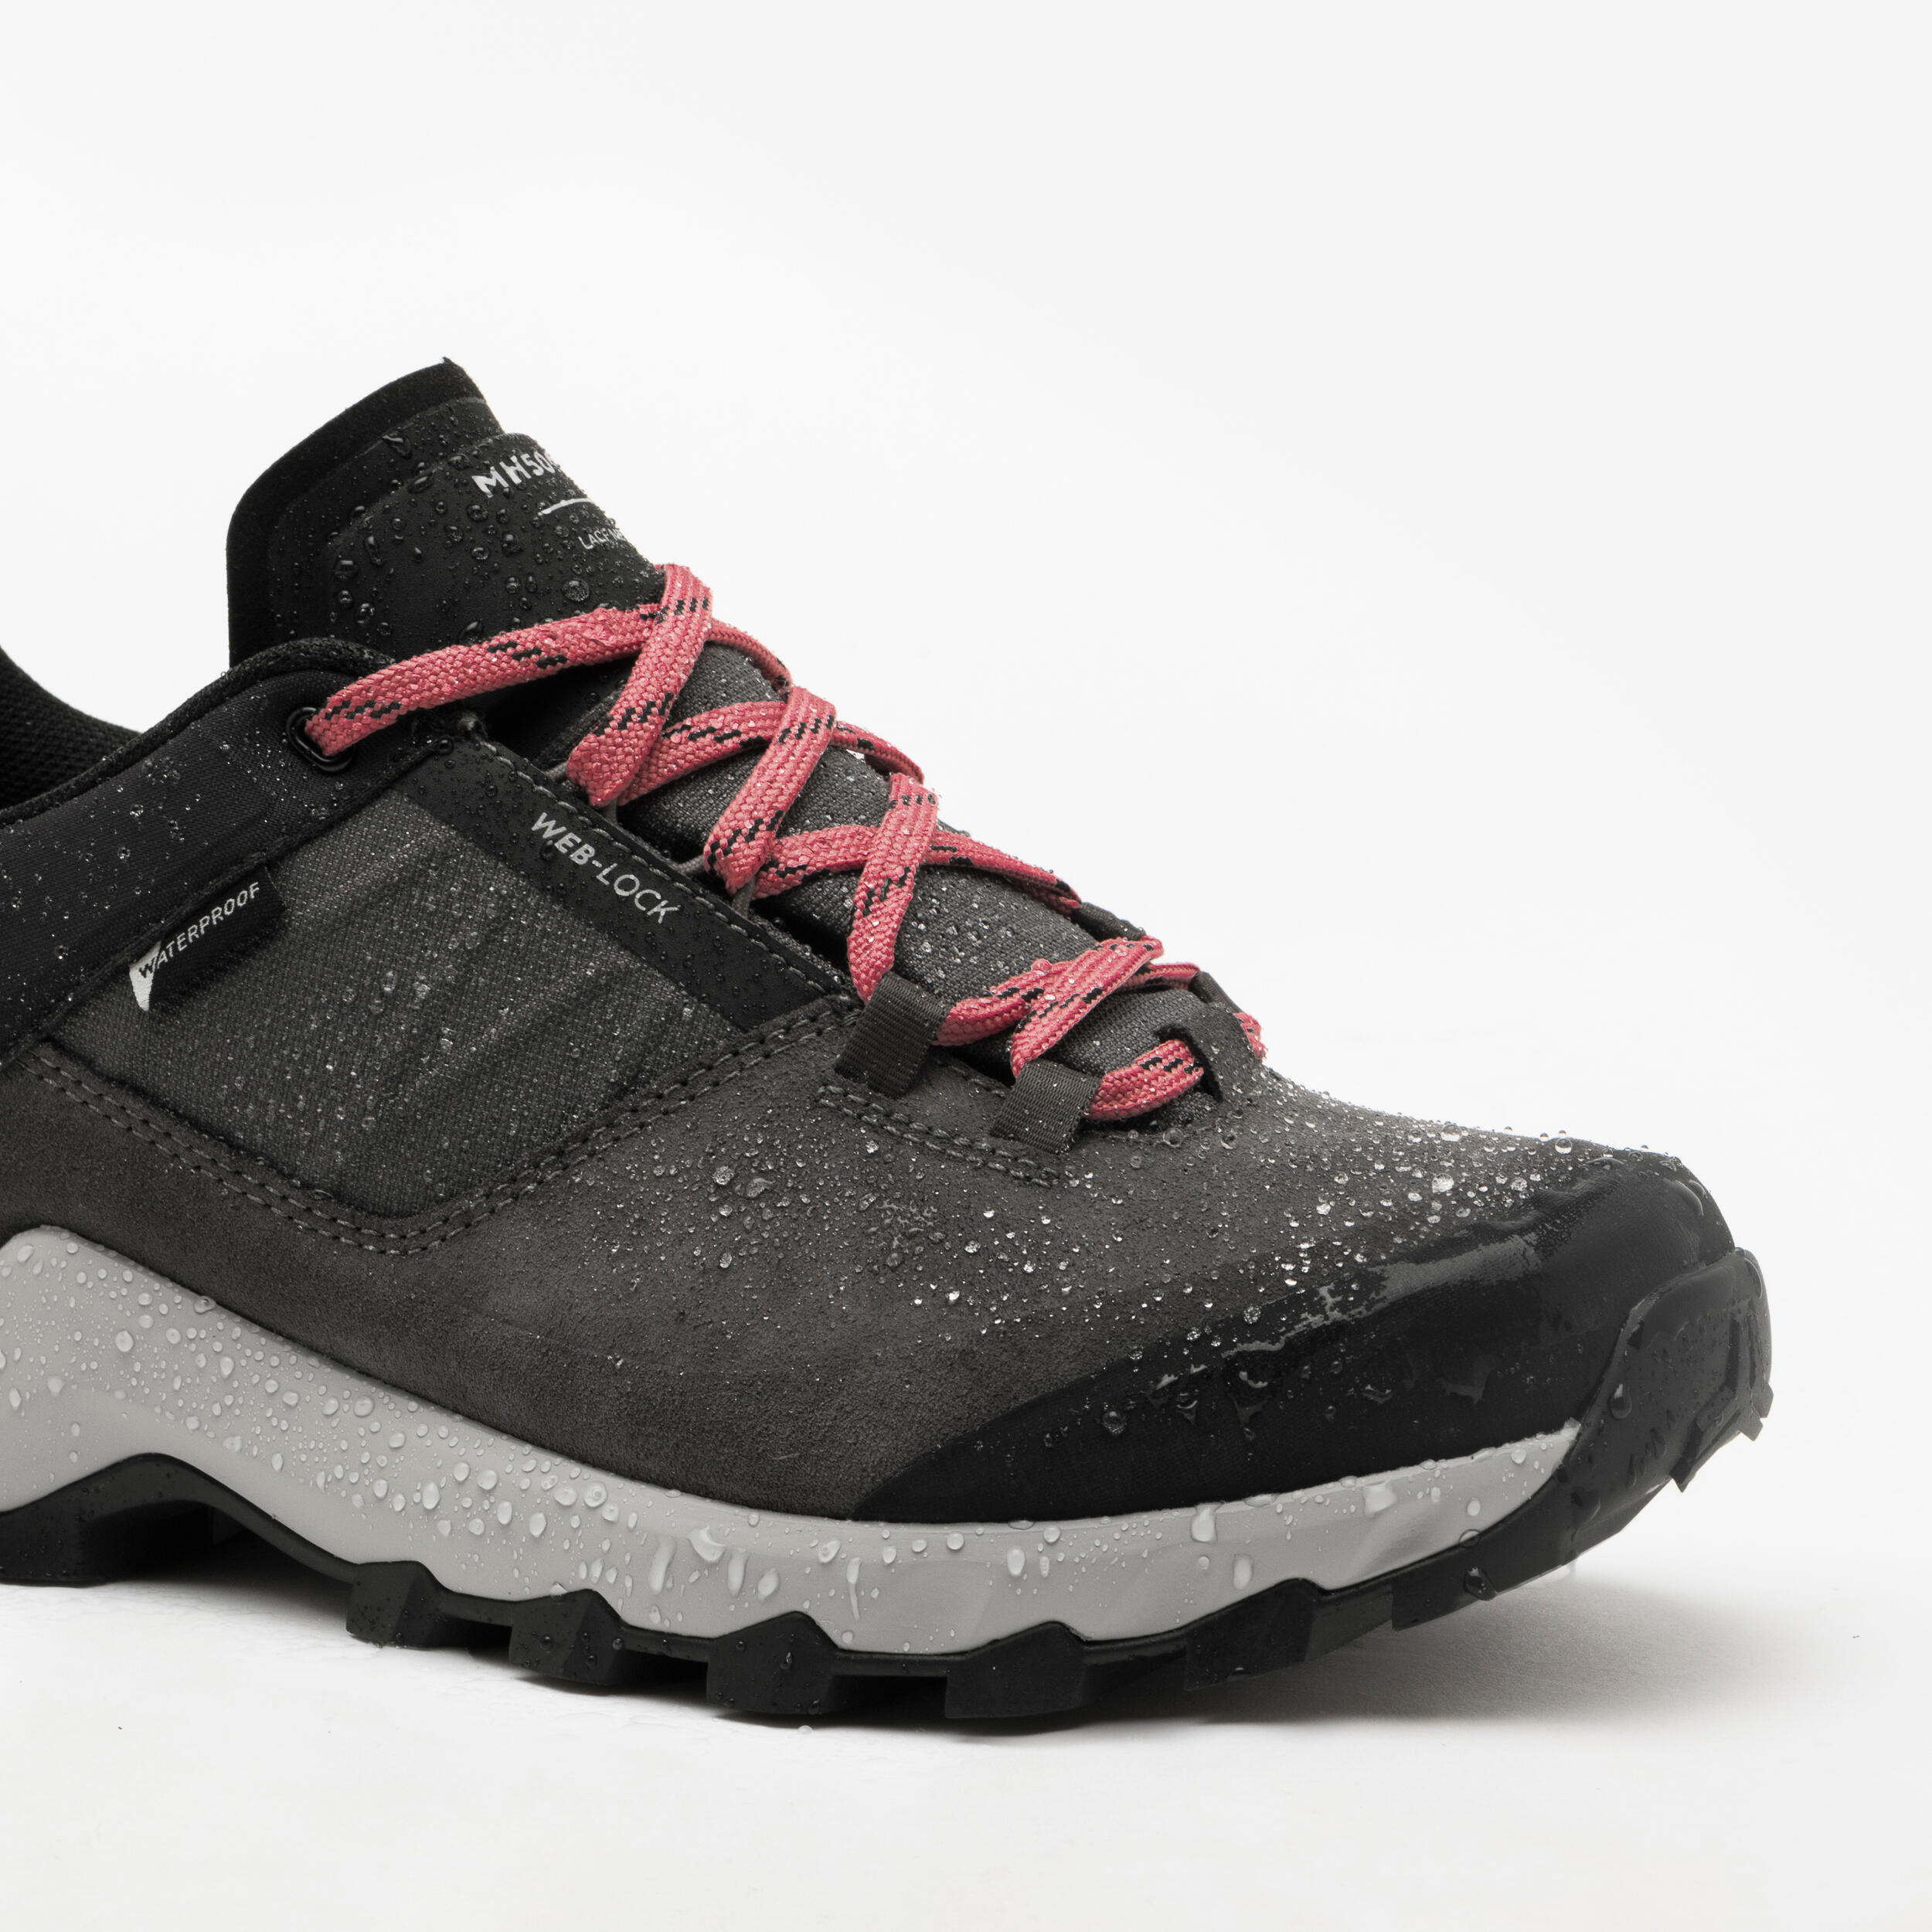 Women's waterproof mountain walking shoes - MH500 Grey 4/8